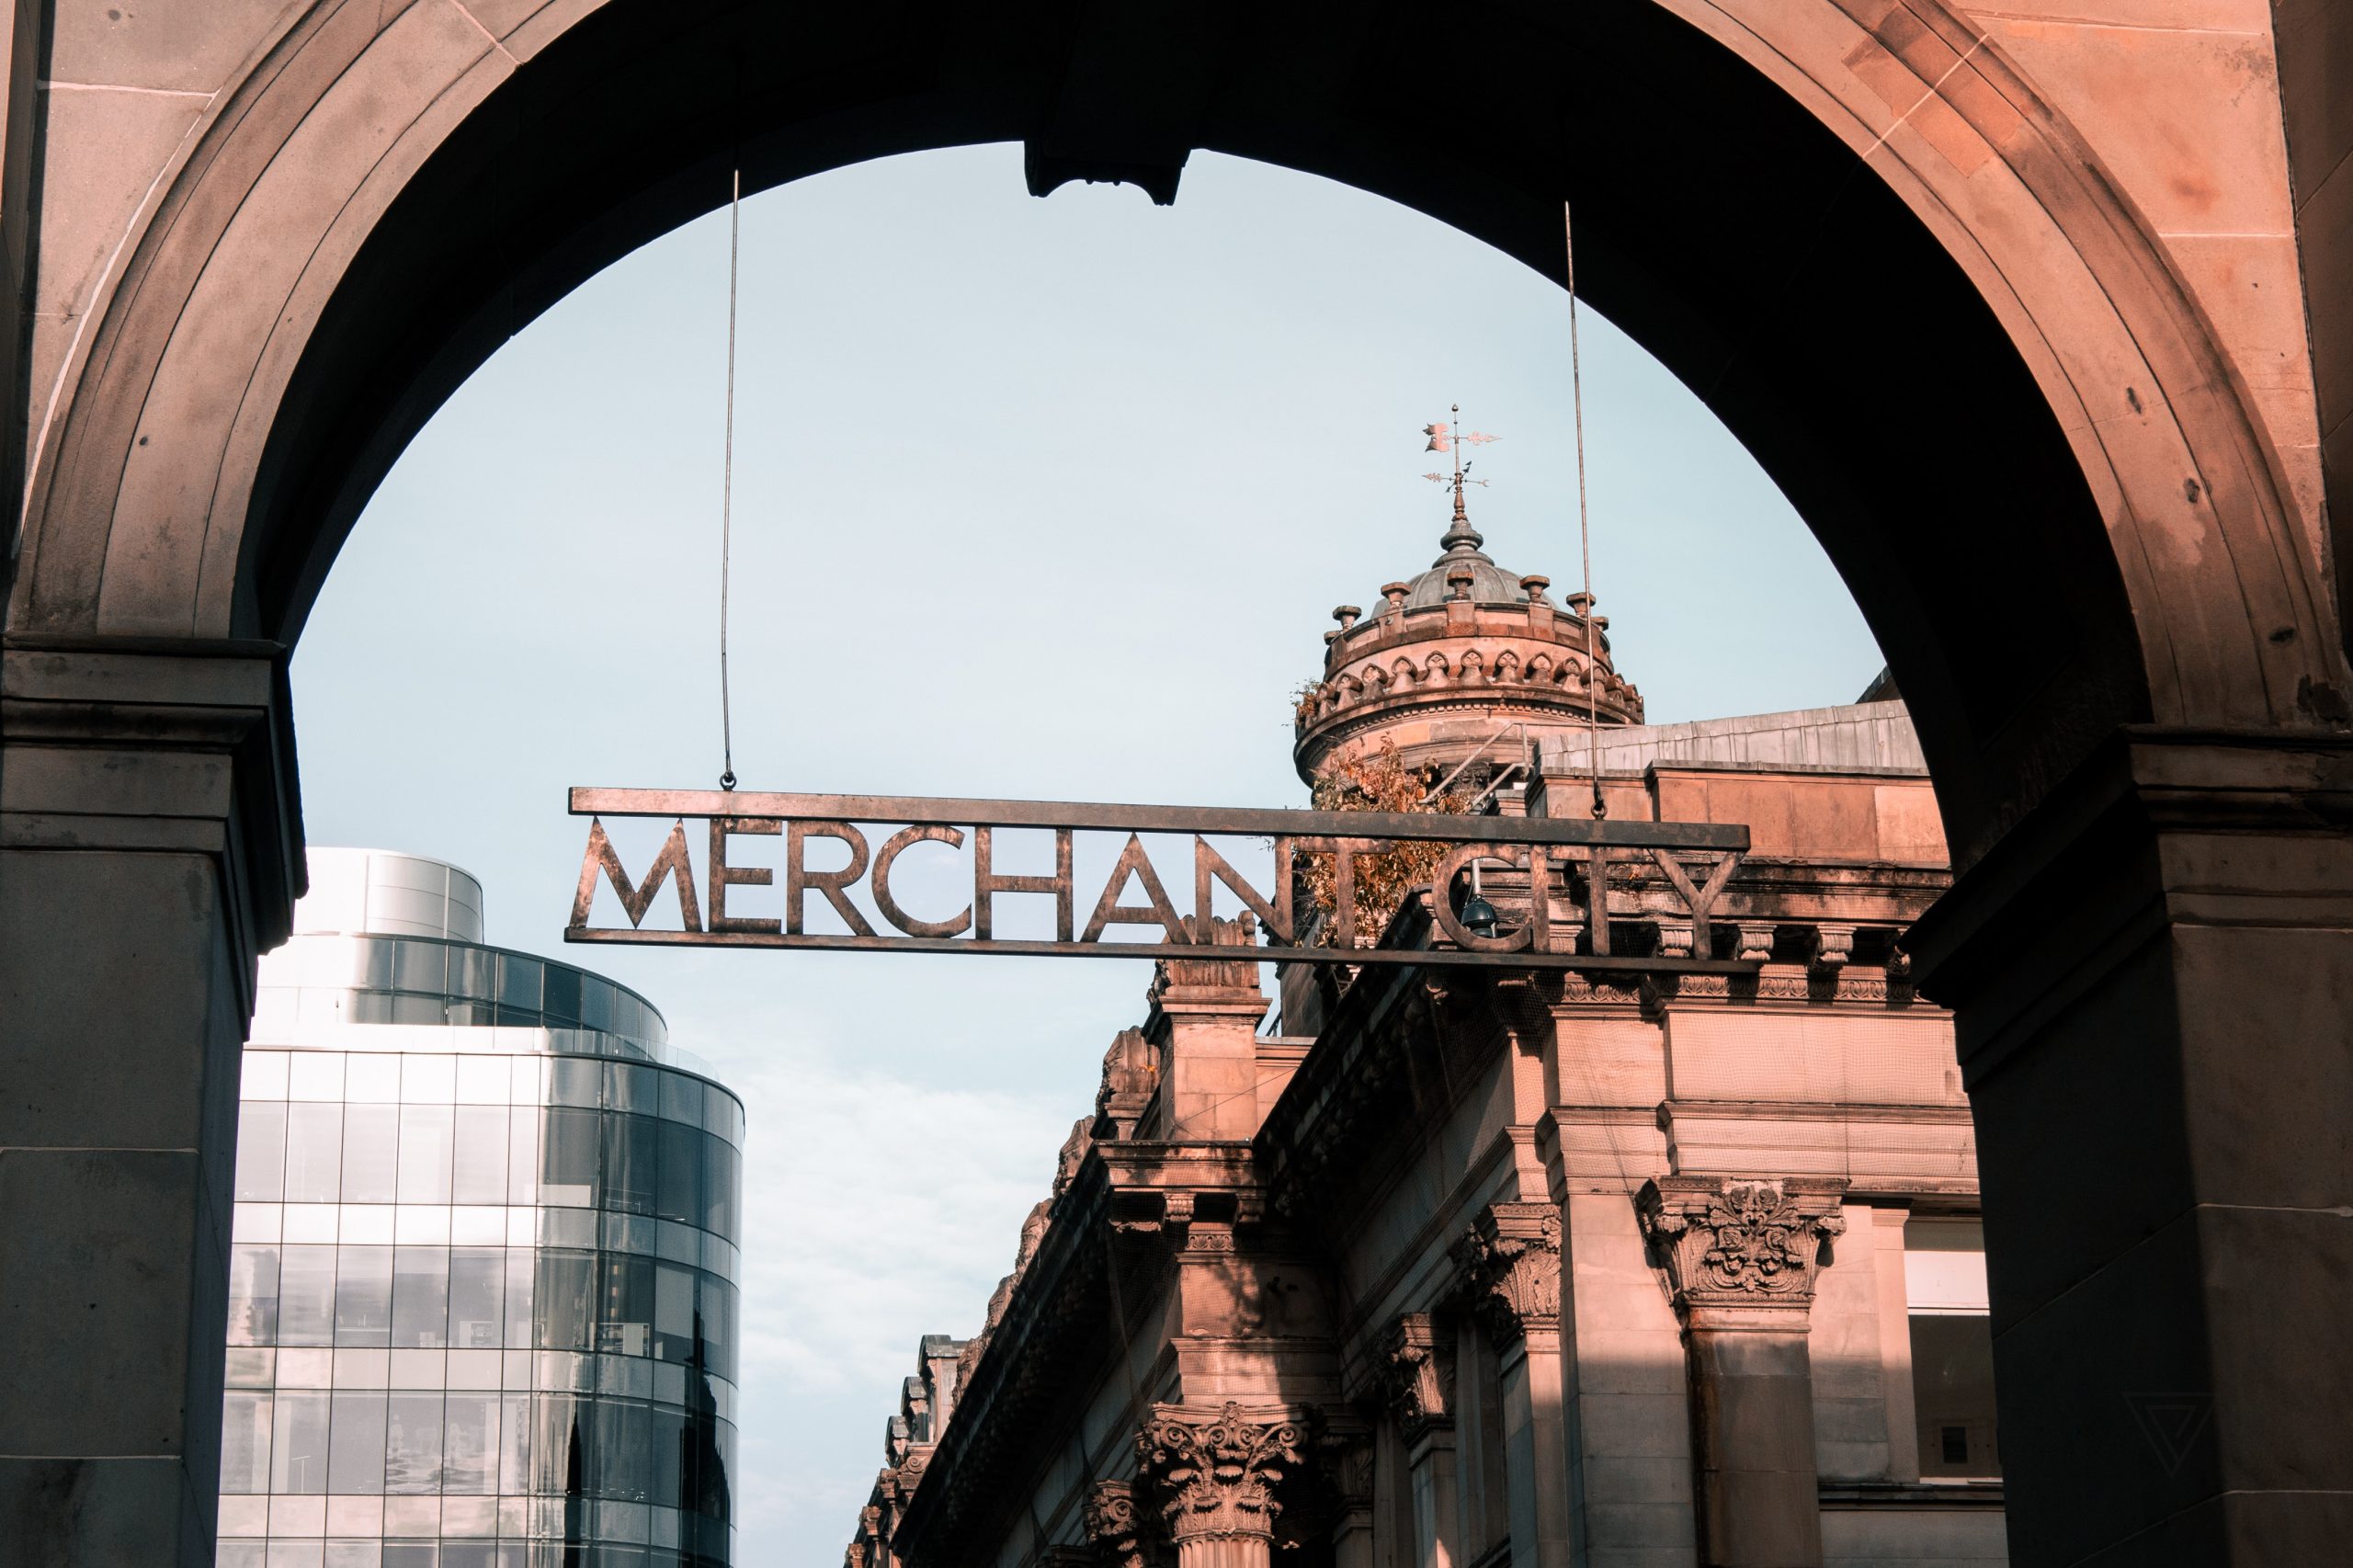 Merchant City in Glasgow